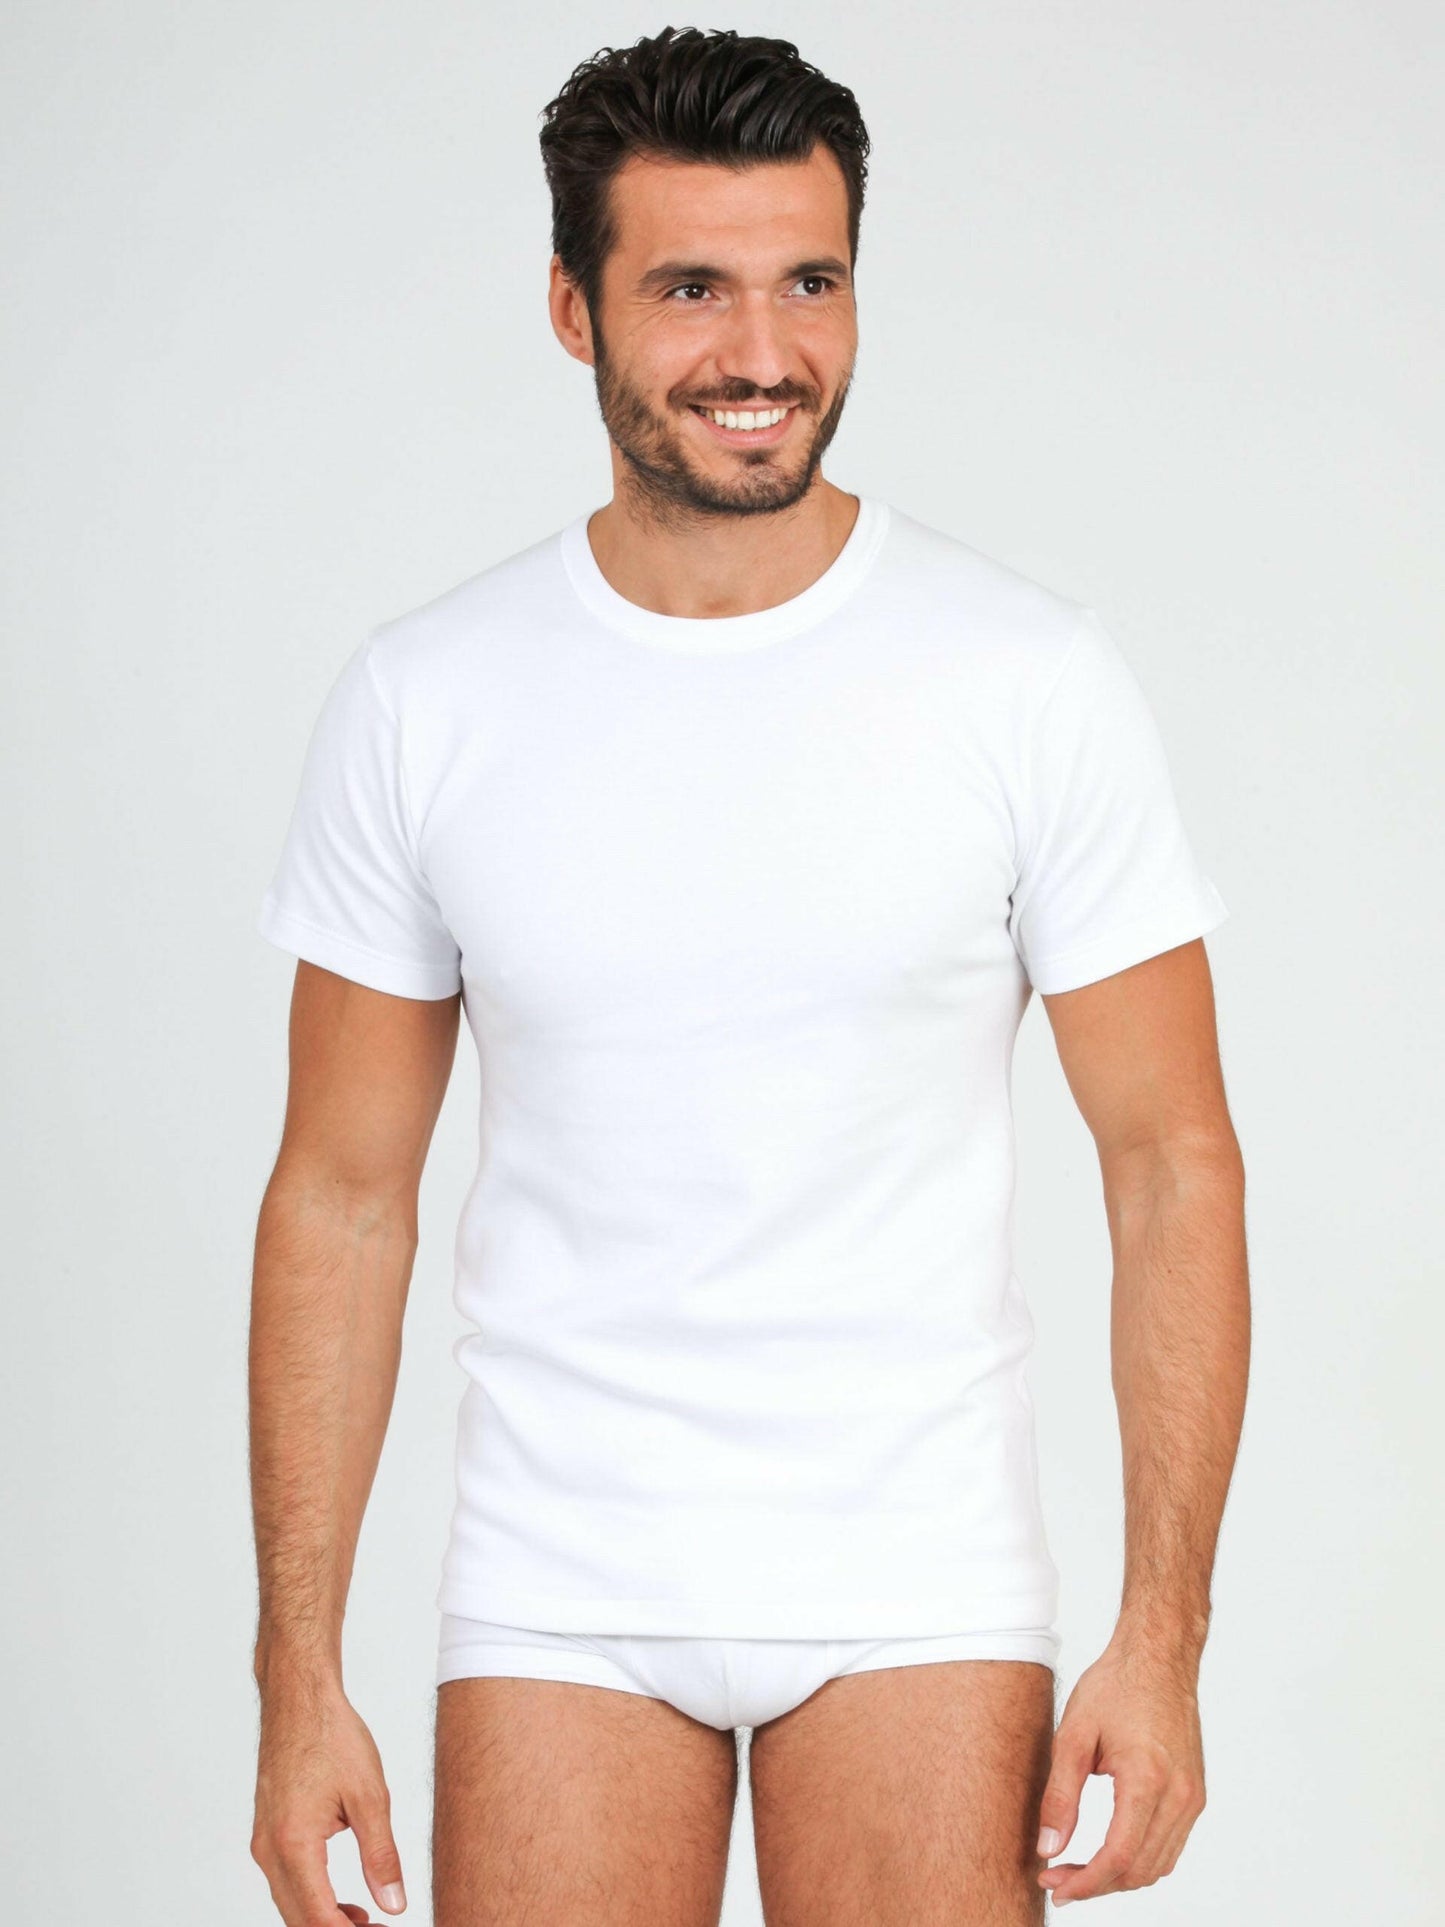 Camiseta de hombre de ALGODÓN POLAR de manga corta - Made in Italy - 485